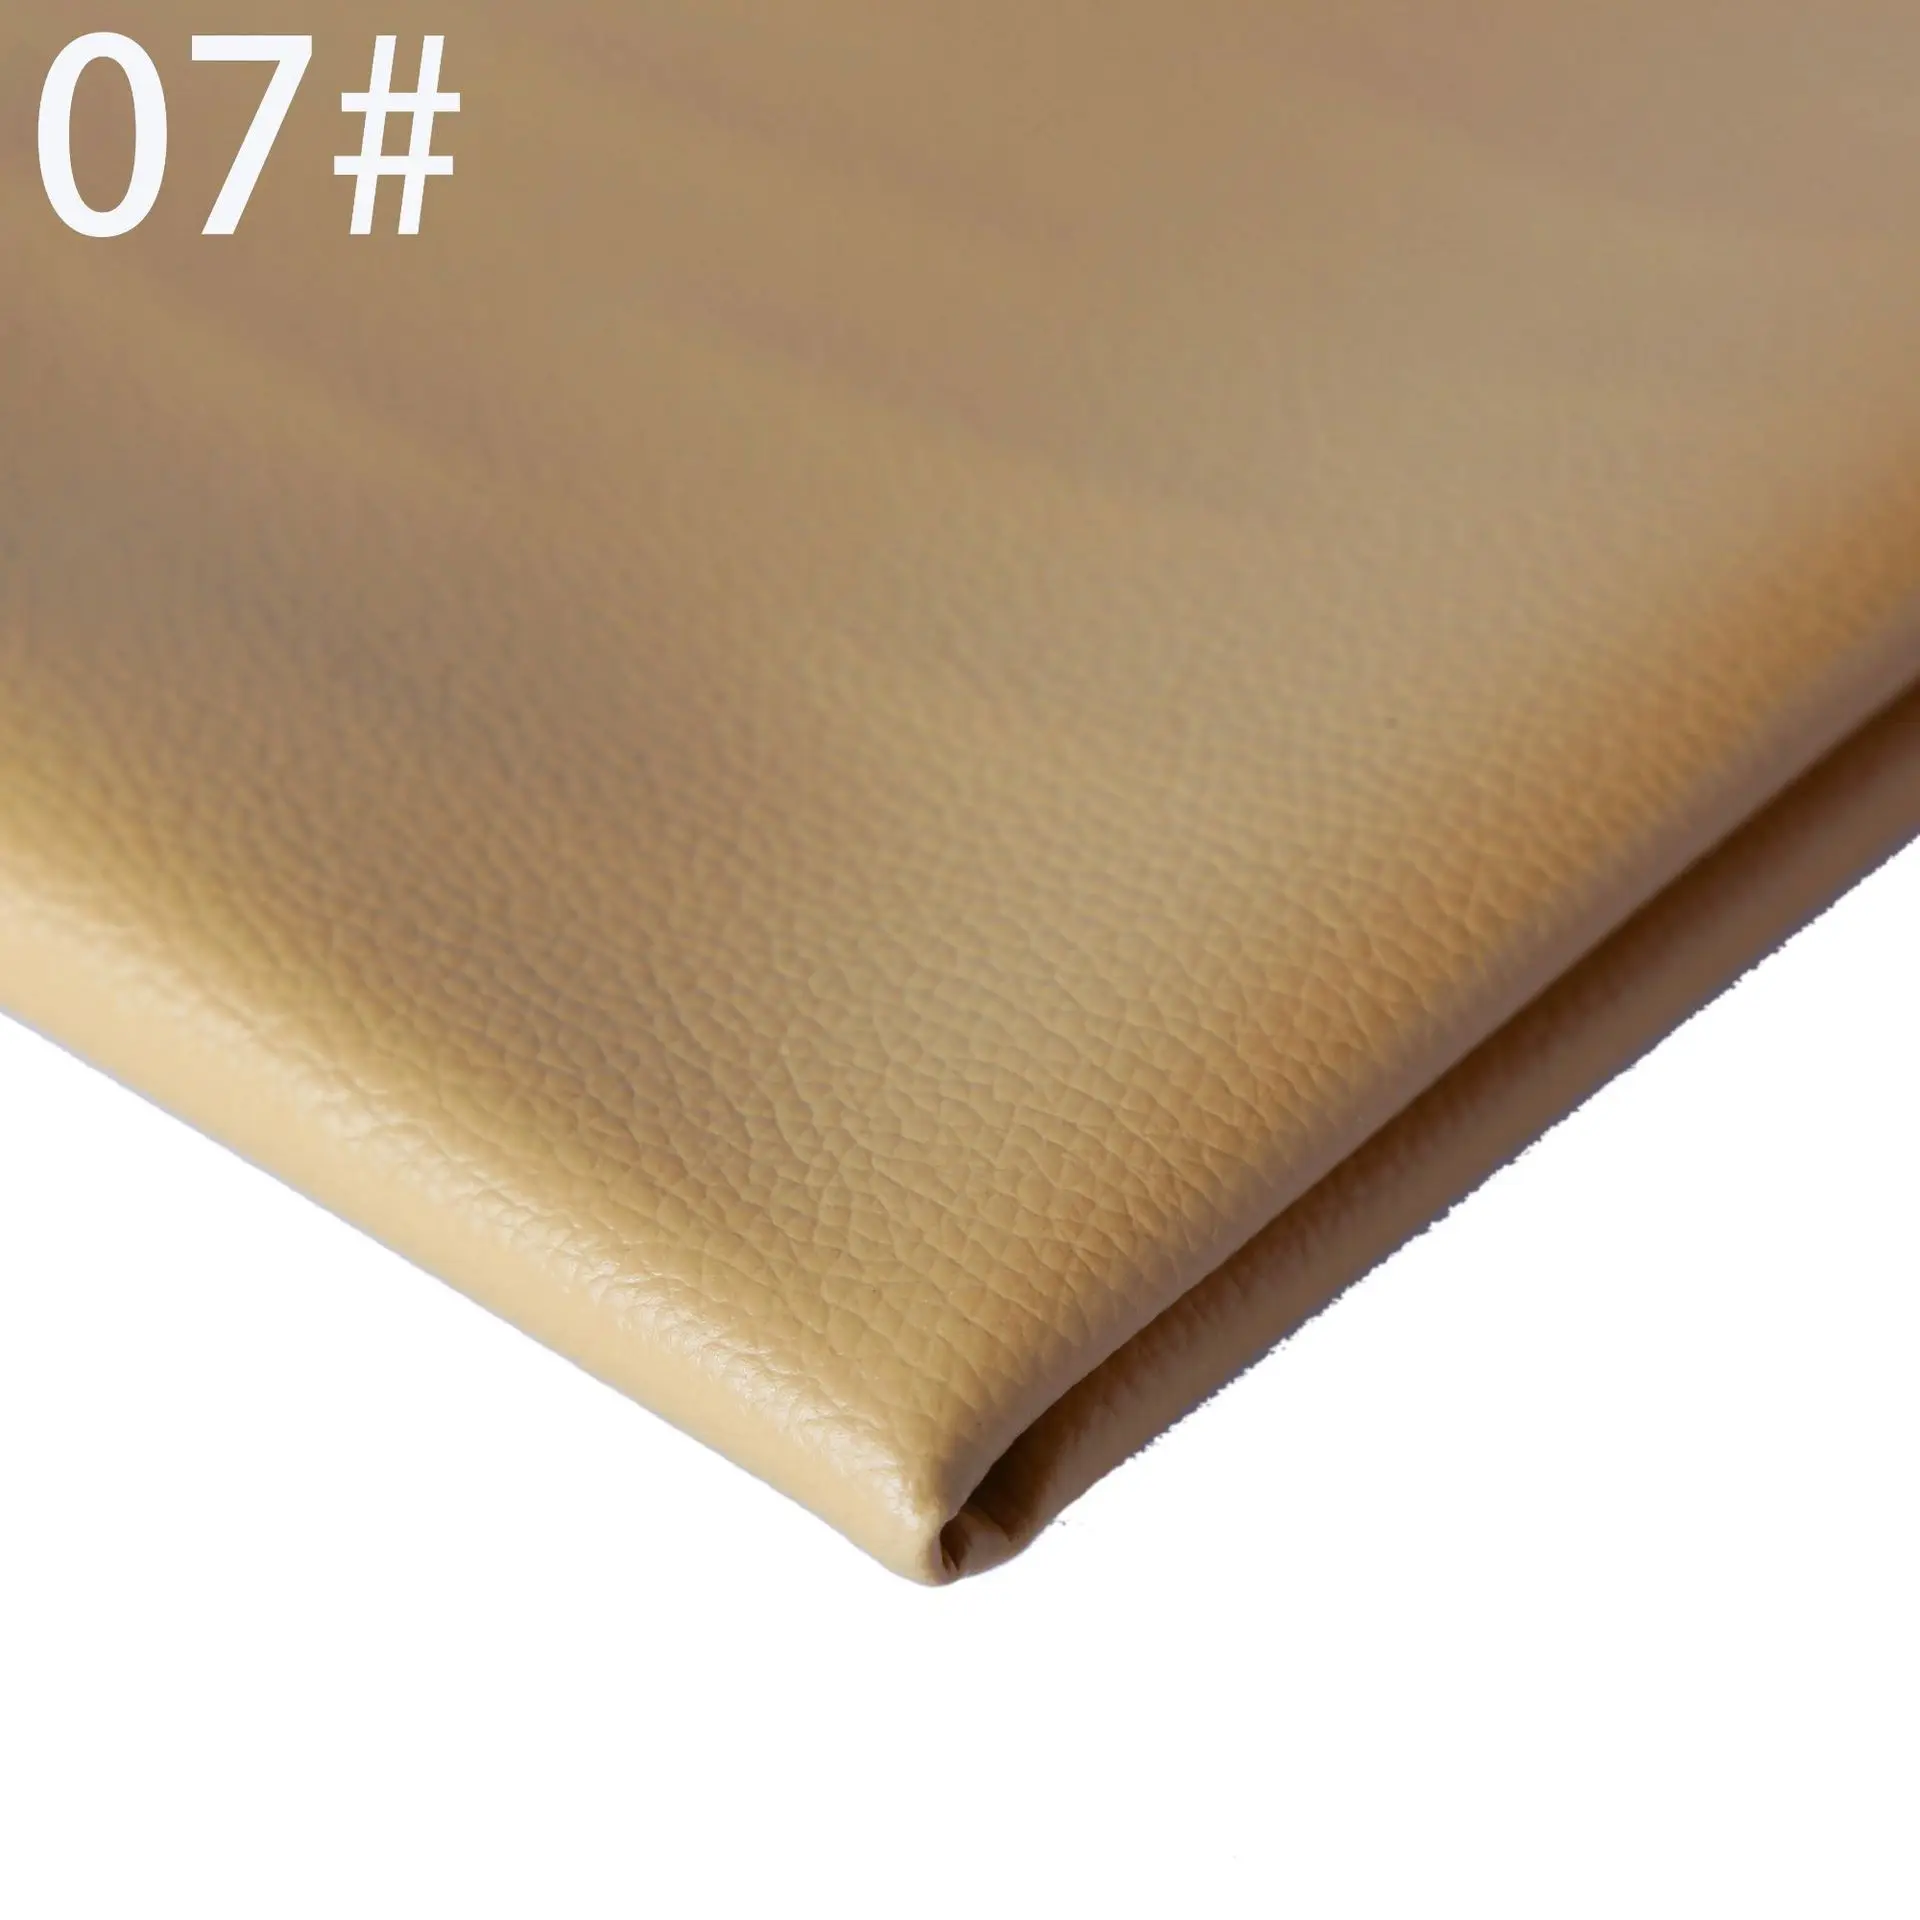 DE90 маленький личи 0,07 см Матовый кожаный диван из ткани Подушка искусственная кожа задний план стены мягкий пакет жесткий пакет кожа - Цвет: 7